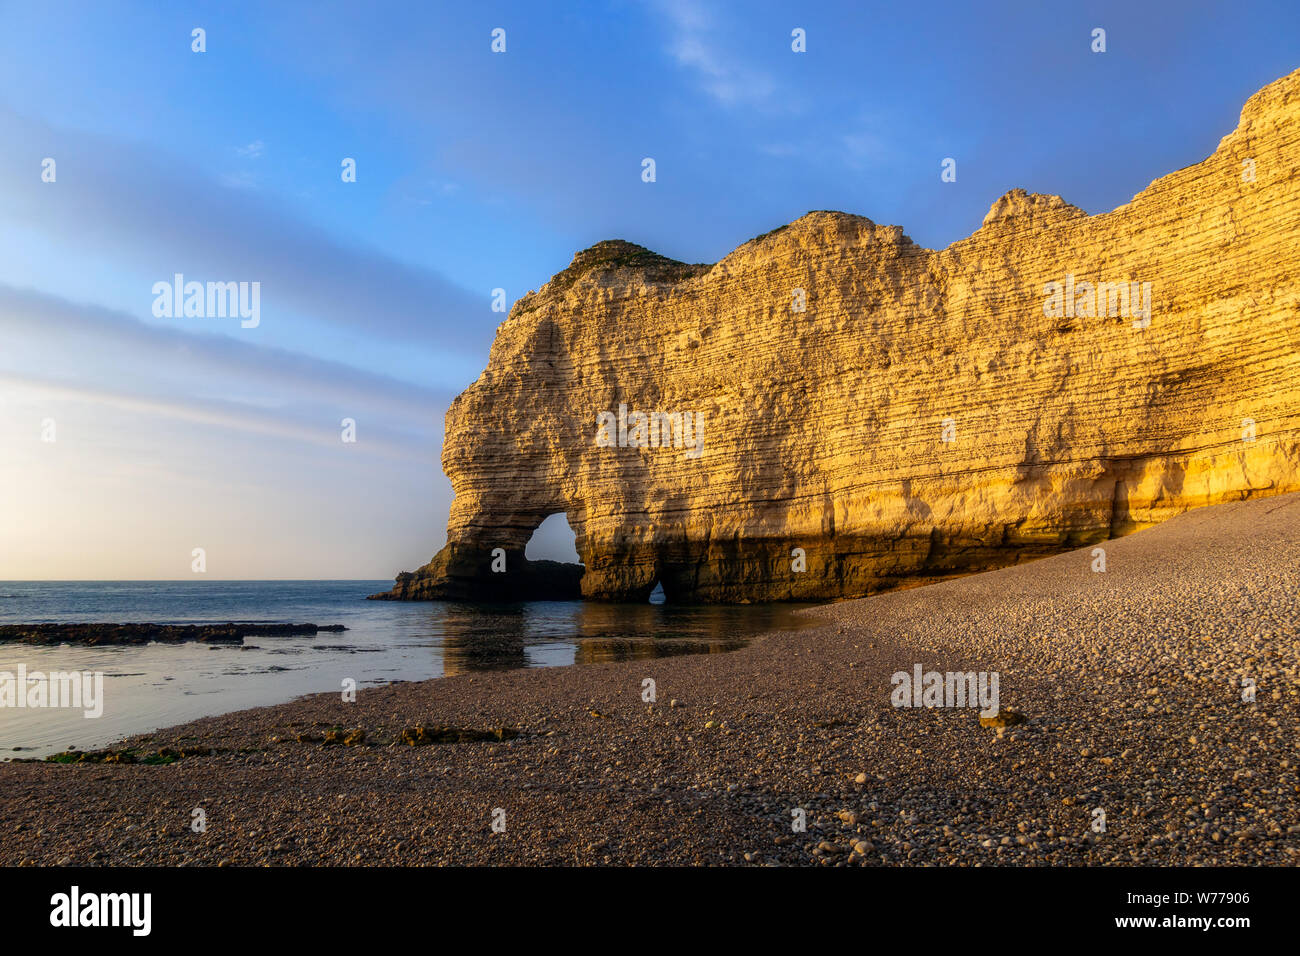 Falaise d'Amont, iconico roccia calcarea della costa della Normandia, Etretat, crepuscolo di scenario o paesaggio, Francia Foto Stock